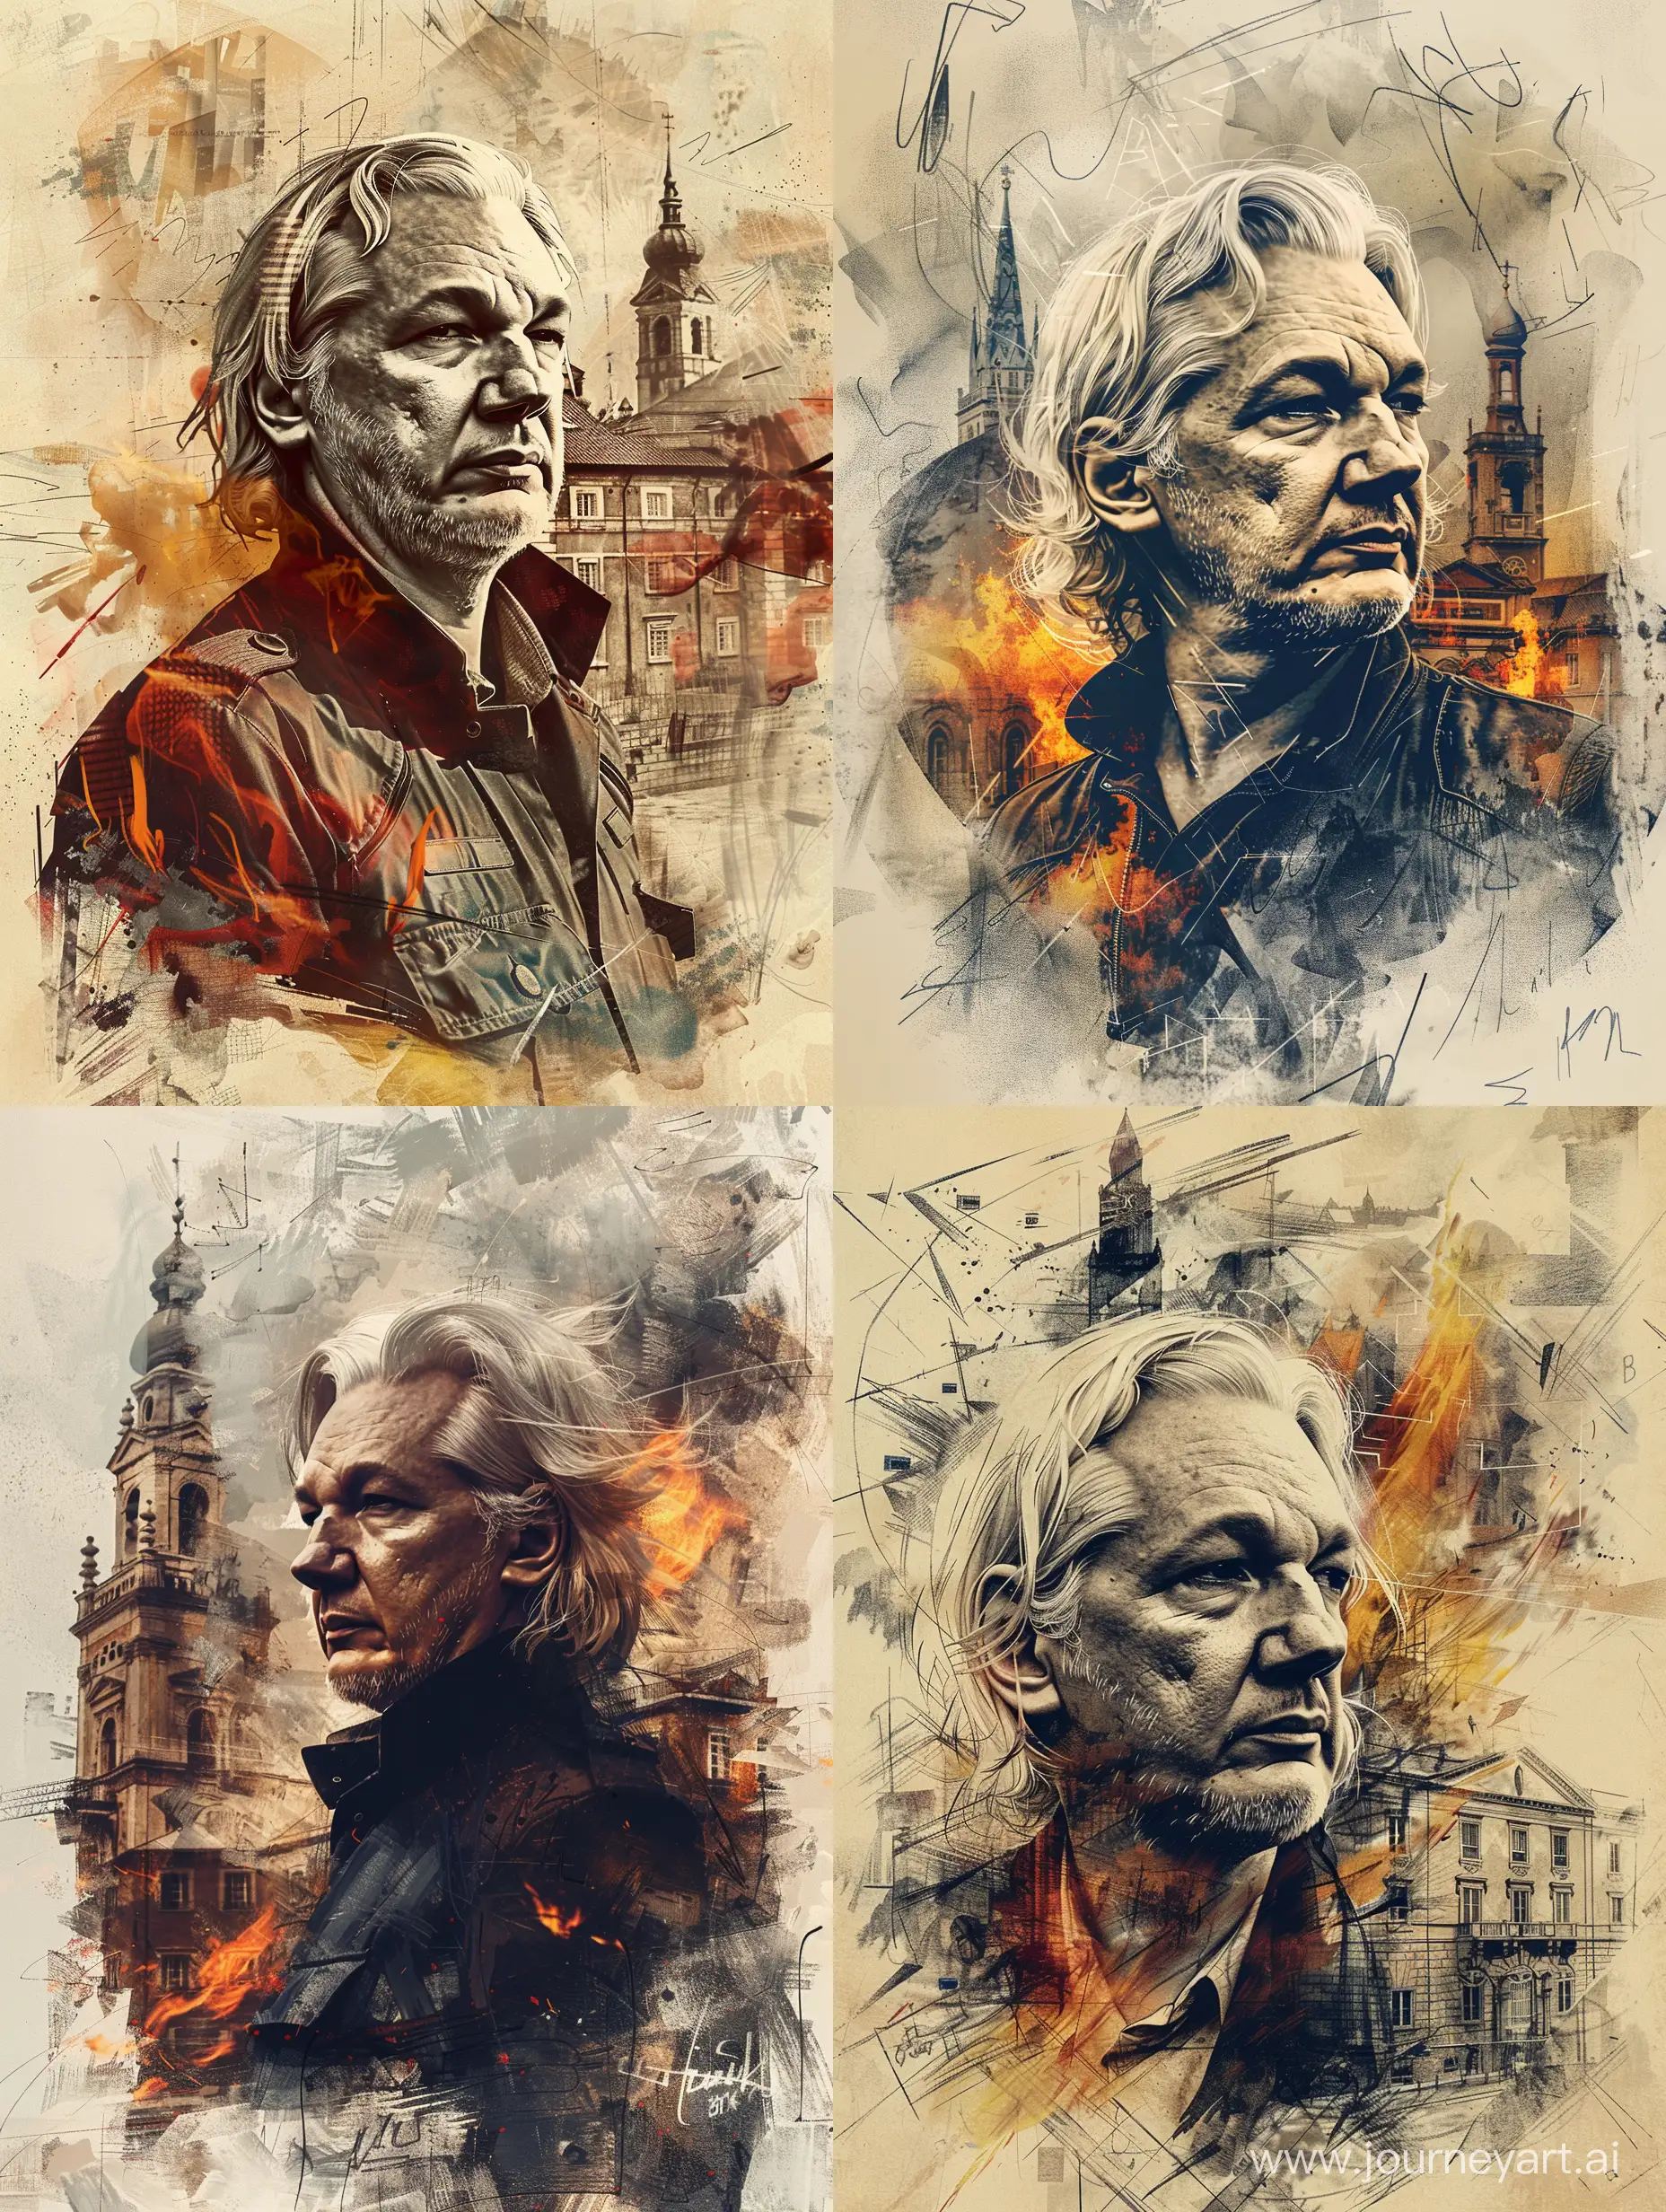 Julian-Assange-Portrait-in-ToulouseLautrec-Style-Amidst-Historic-Ambiance